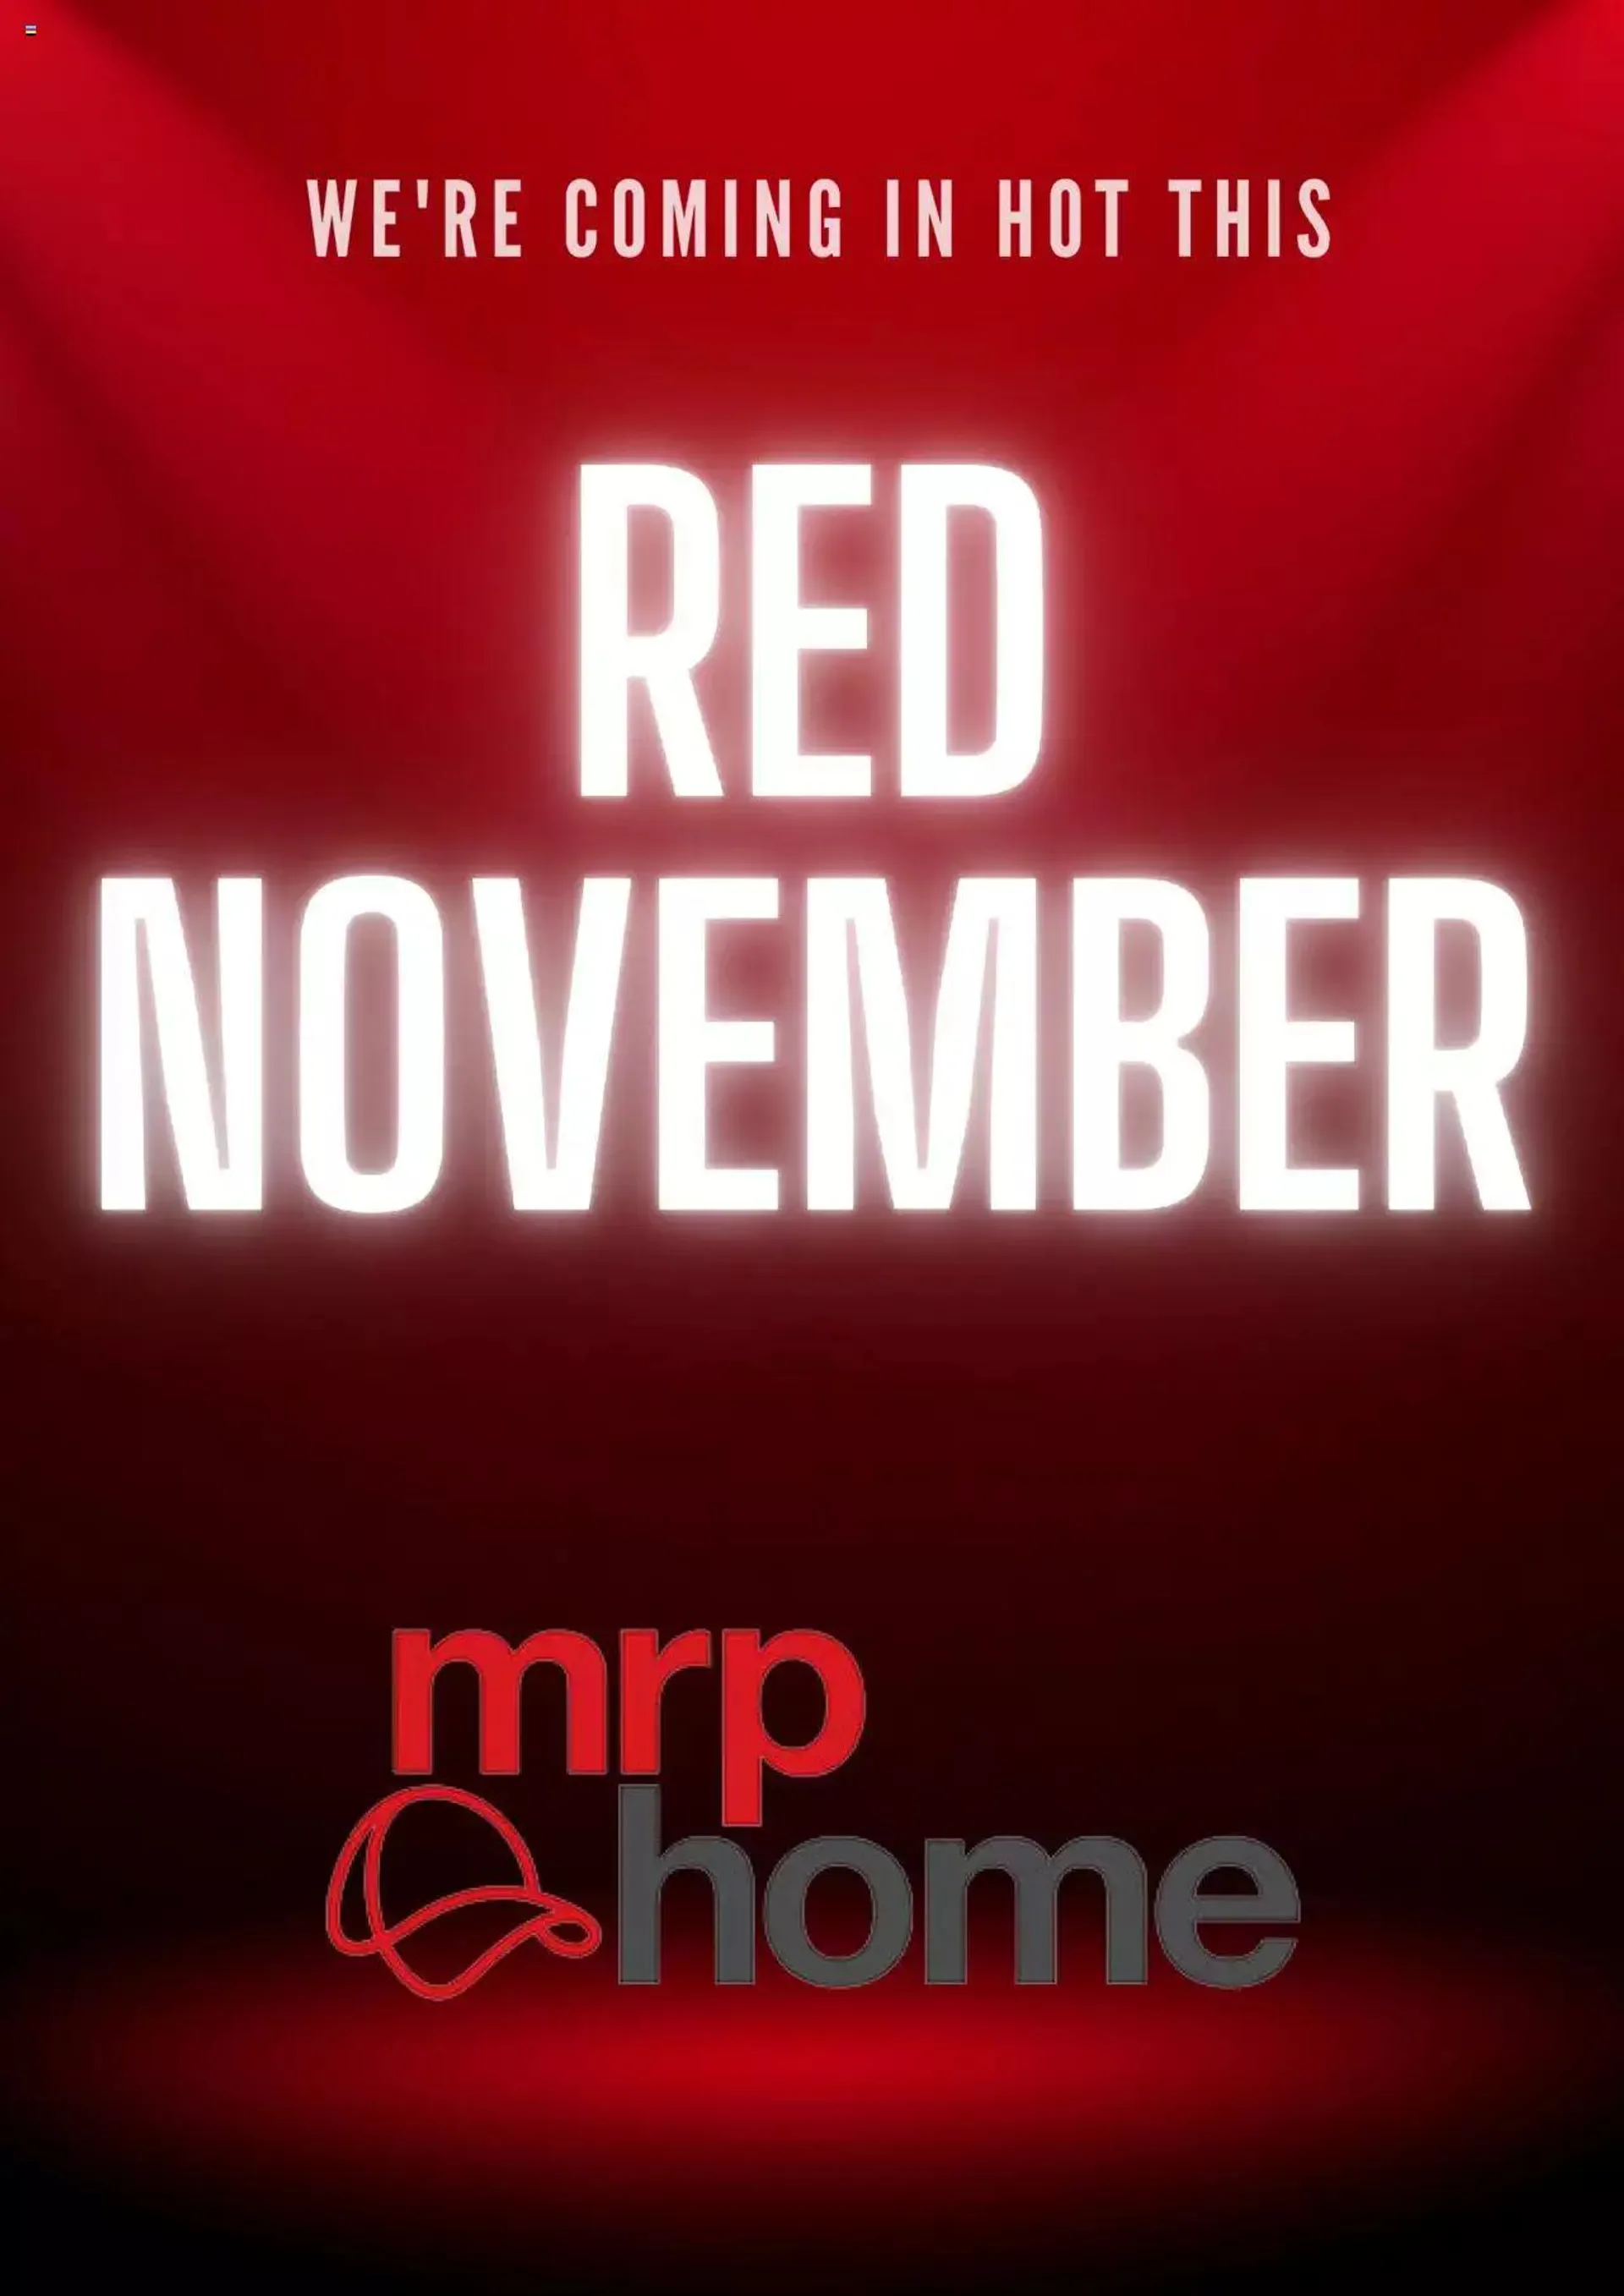 MRP Home - Red November